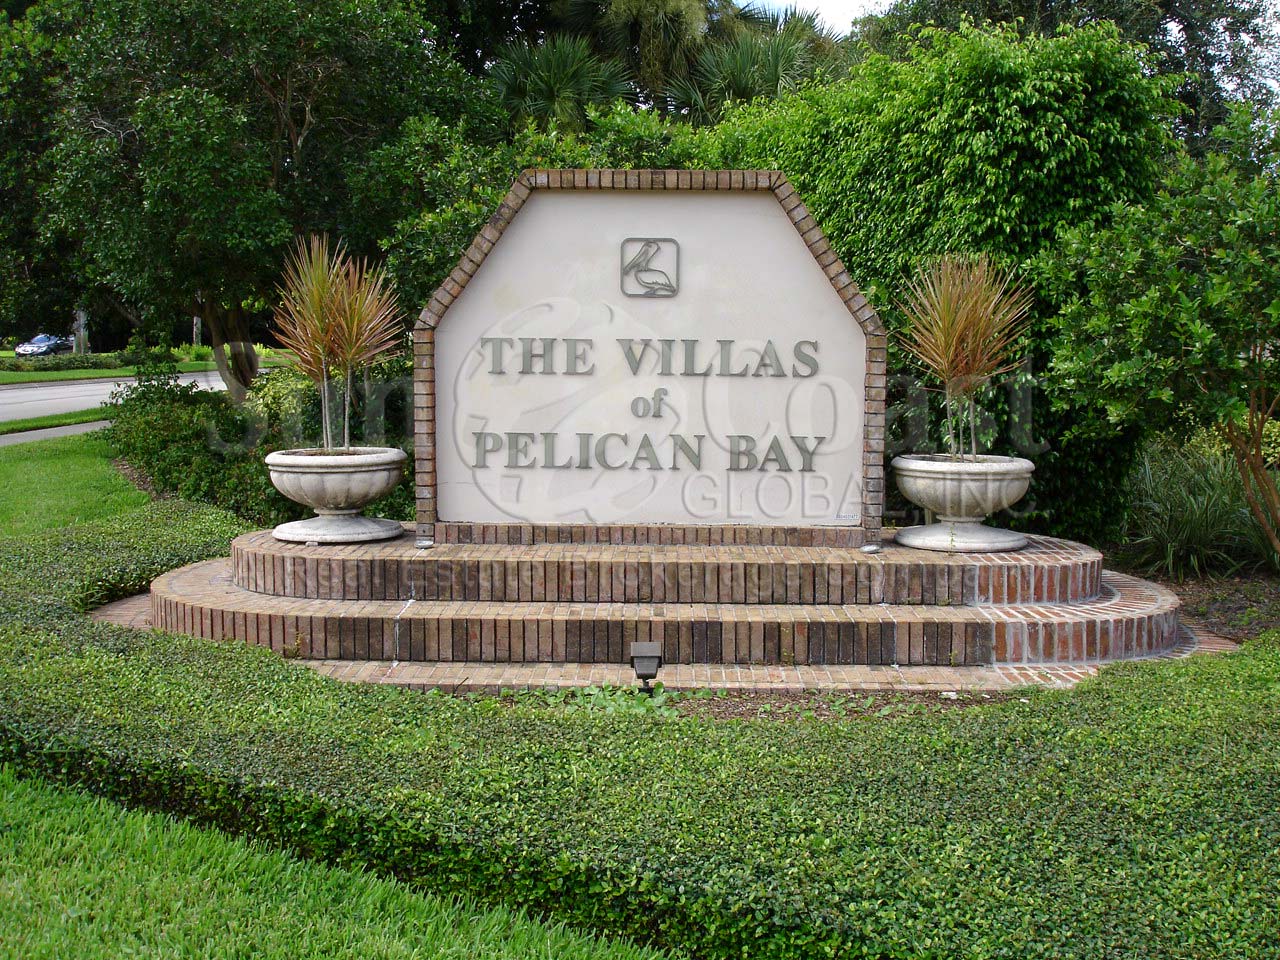 Villas Signage